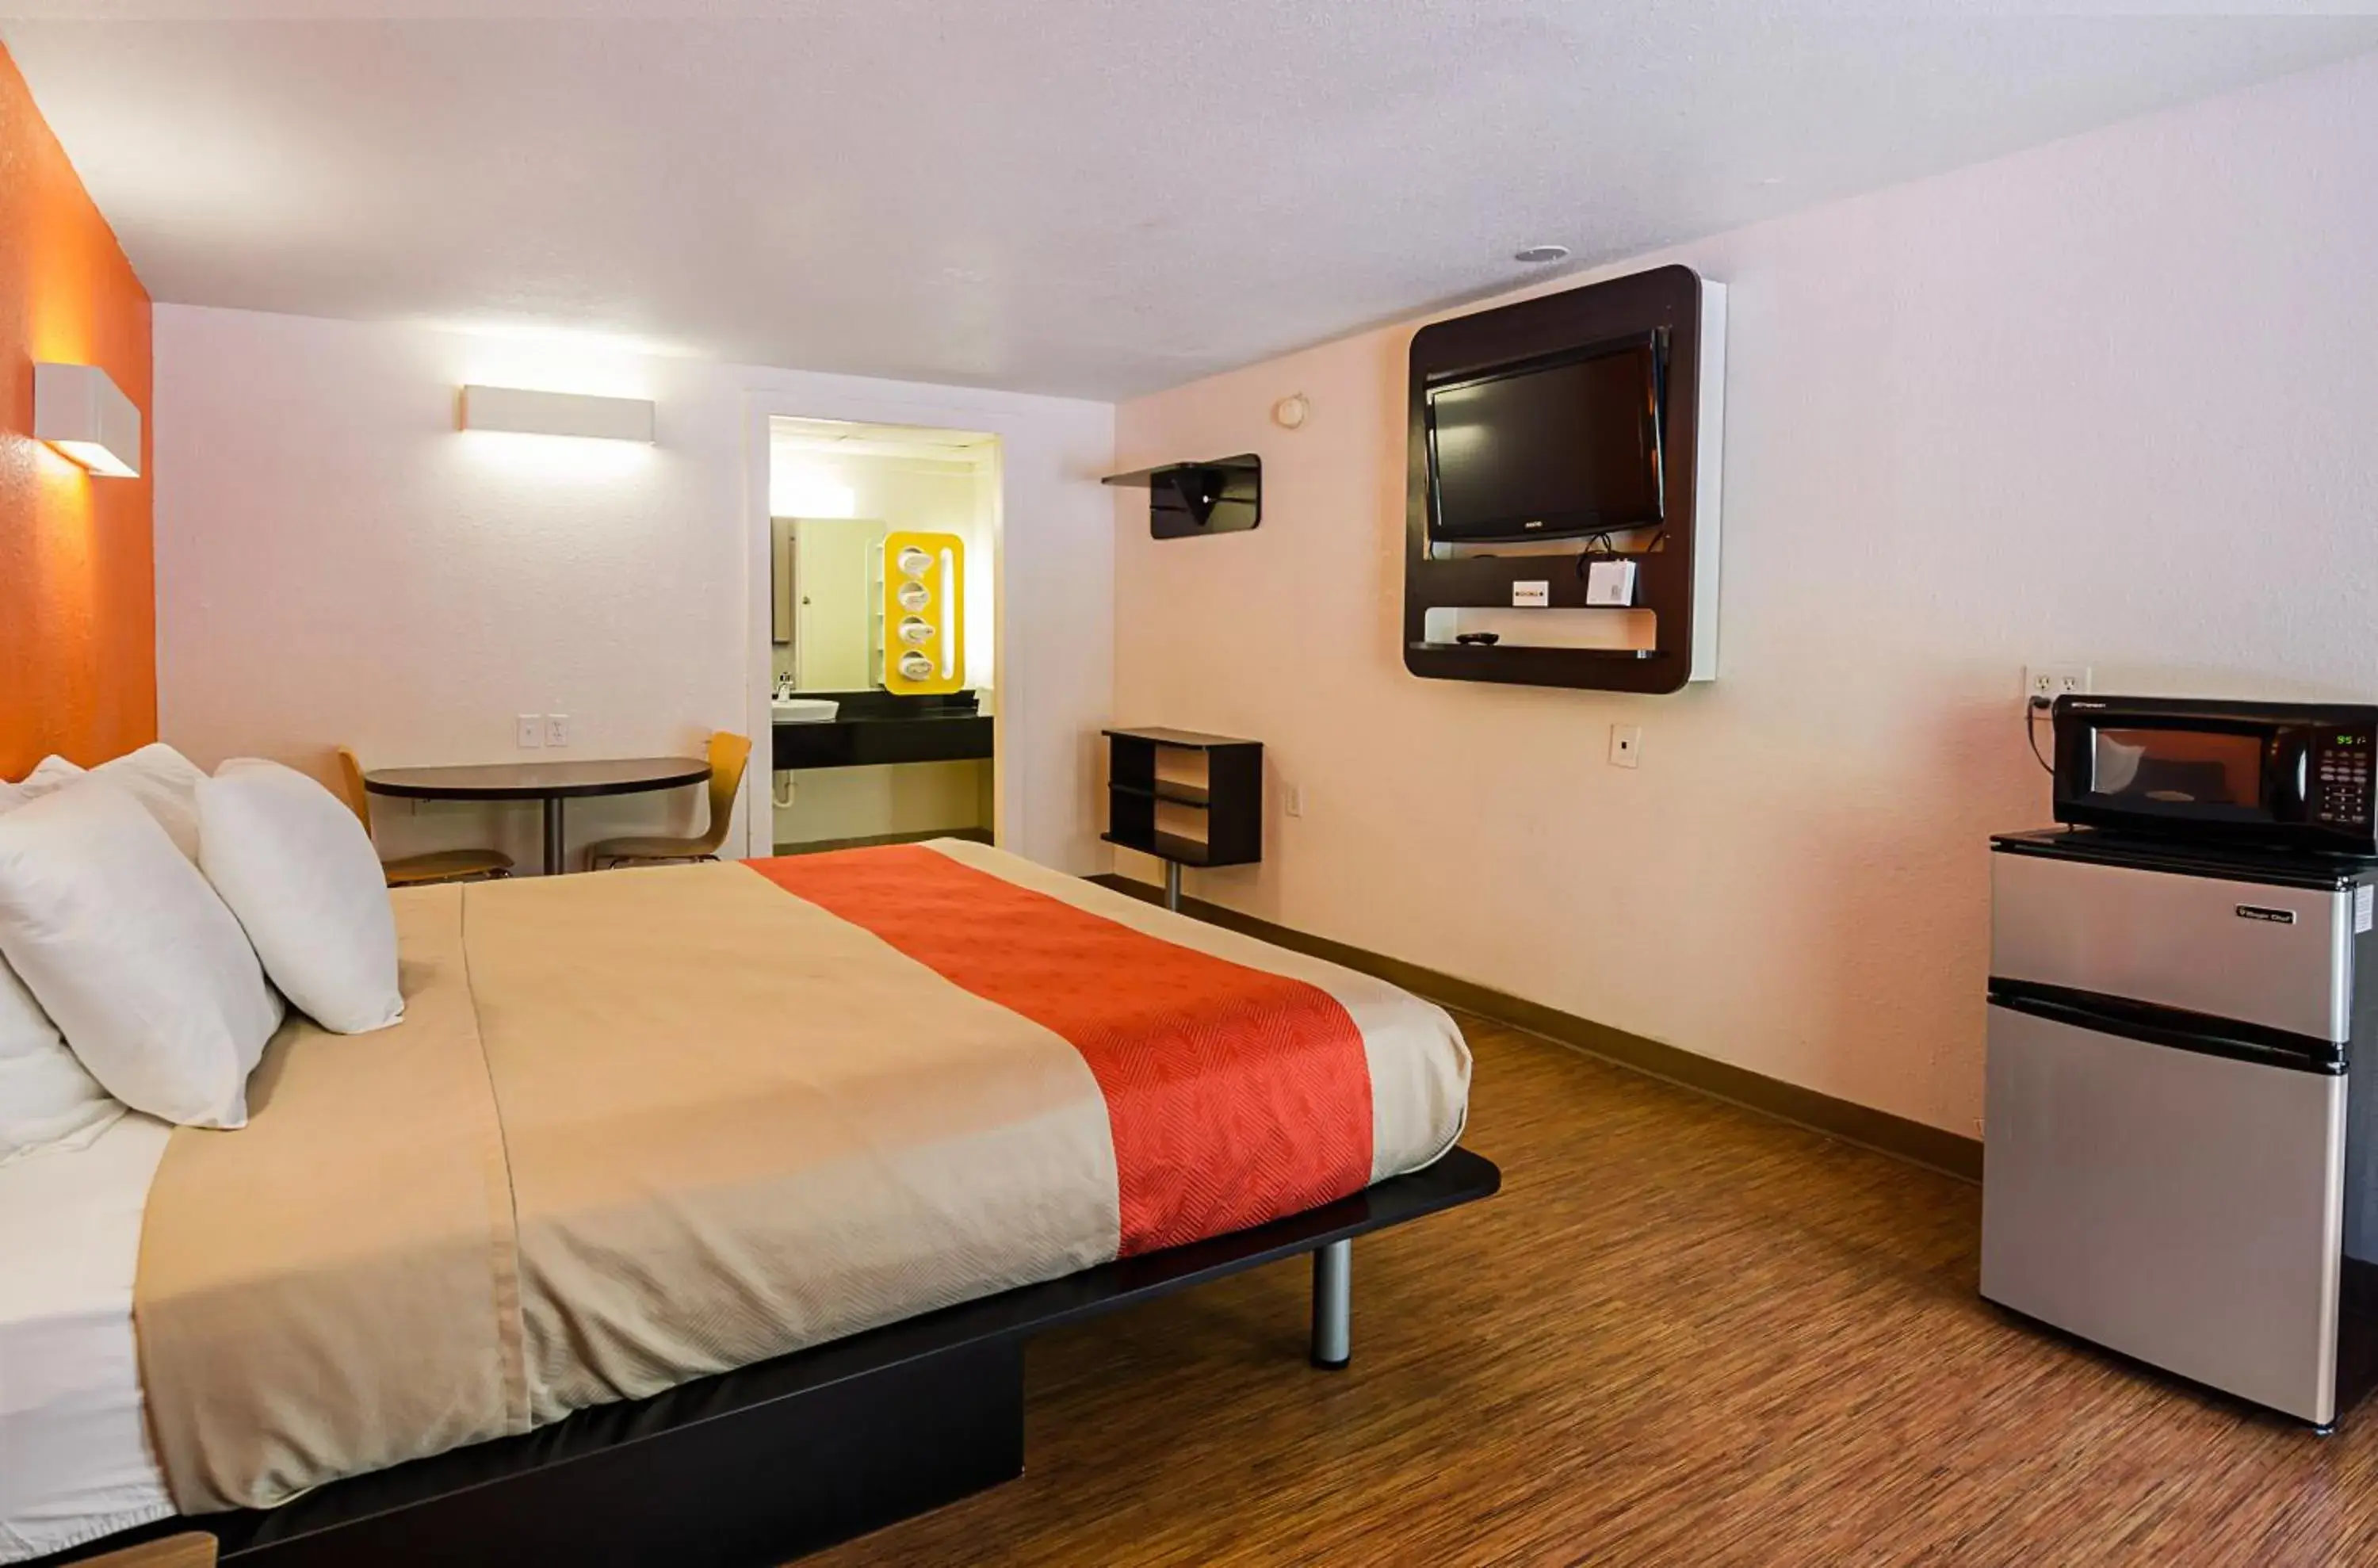 Bedroom, Room Photo in Rodeway Inn